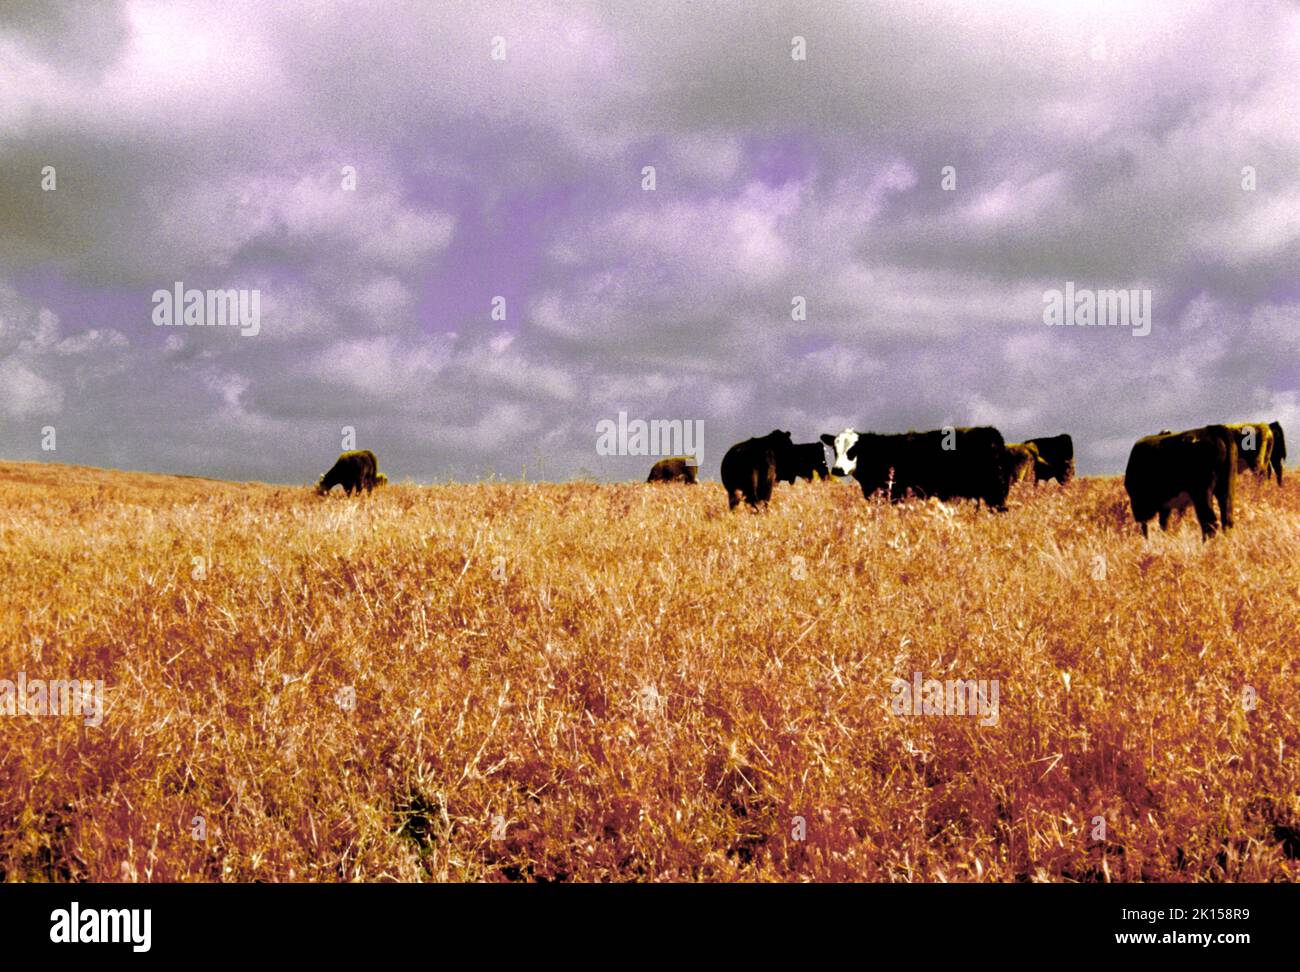 Infrarotkühe im Feld von rotem Gras und bewölktem Himmel. Surreales Bild einer einzigen Kuh, die den Fotografen ansieht. Stockfoto